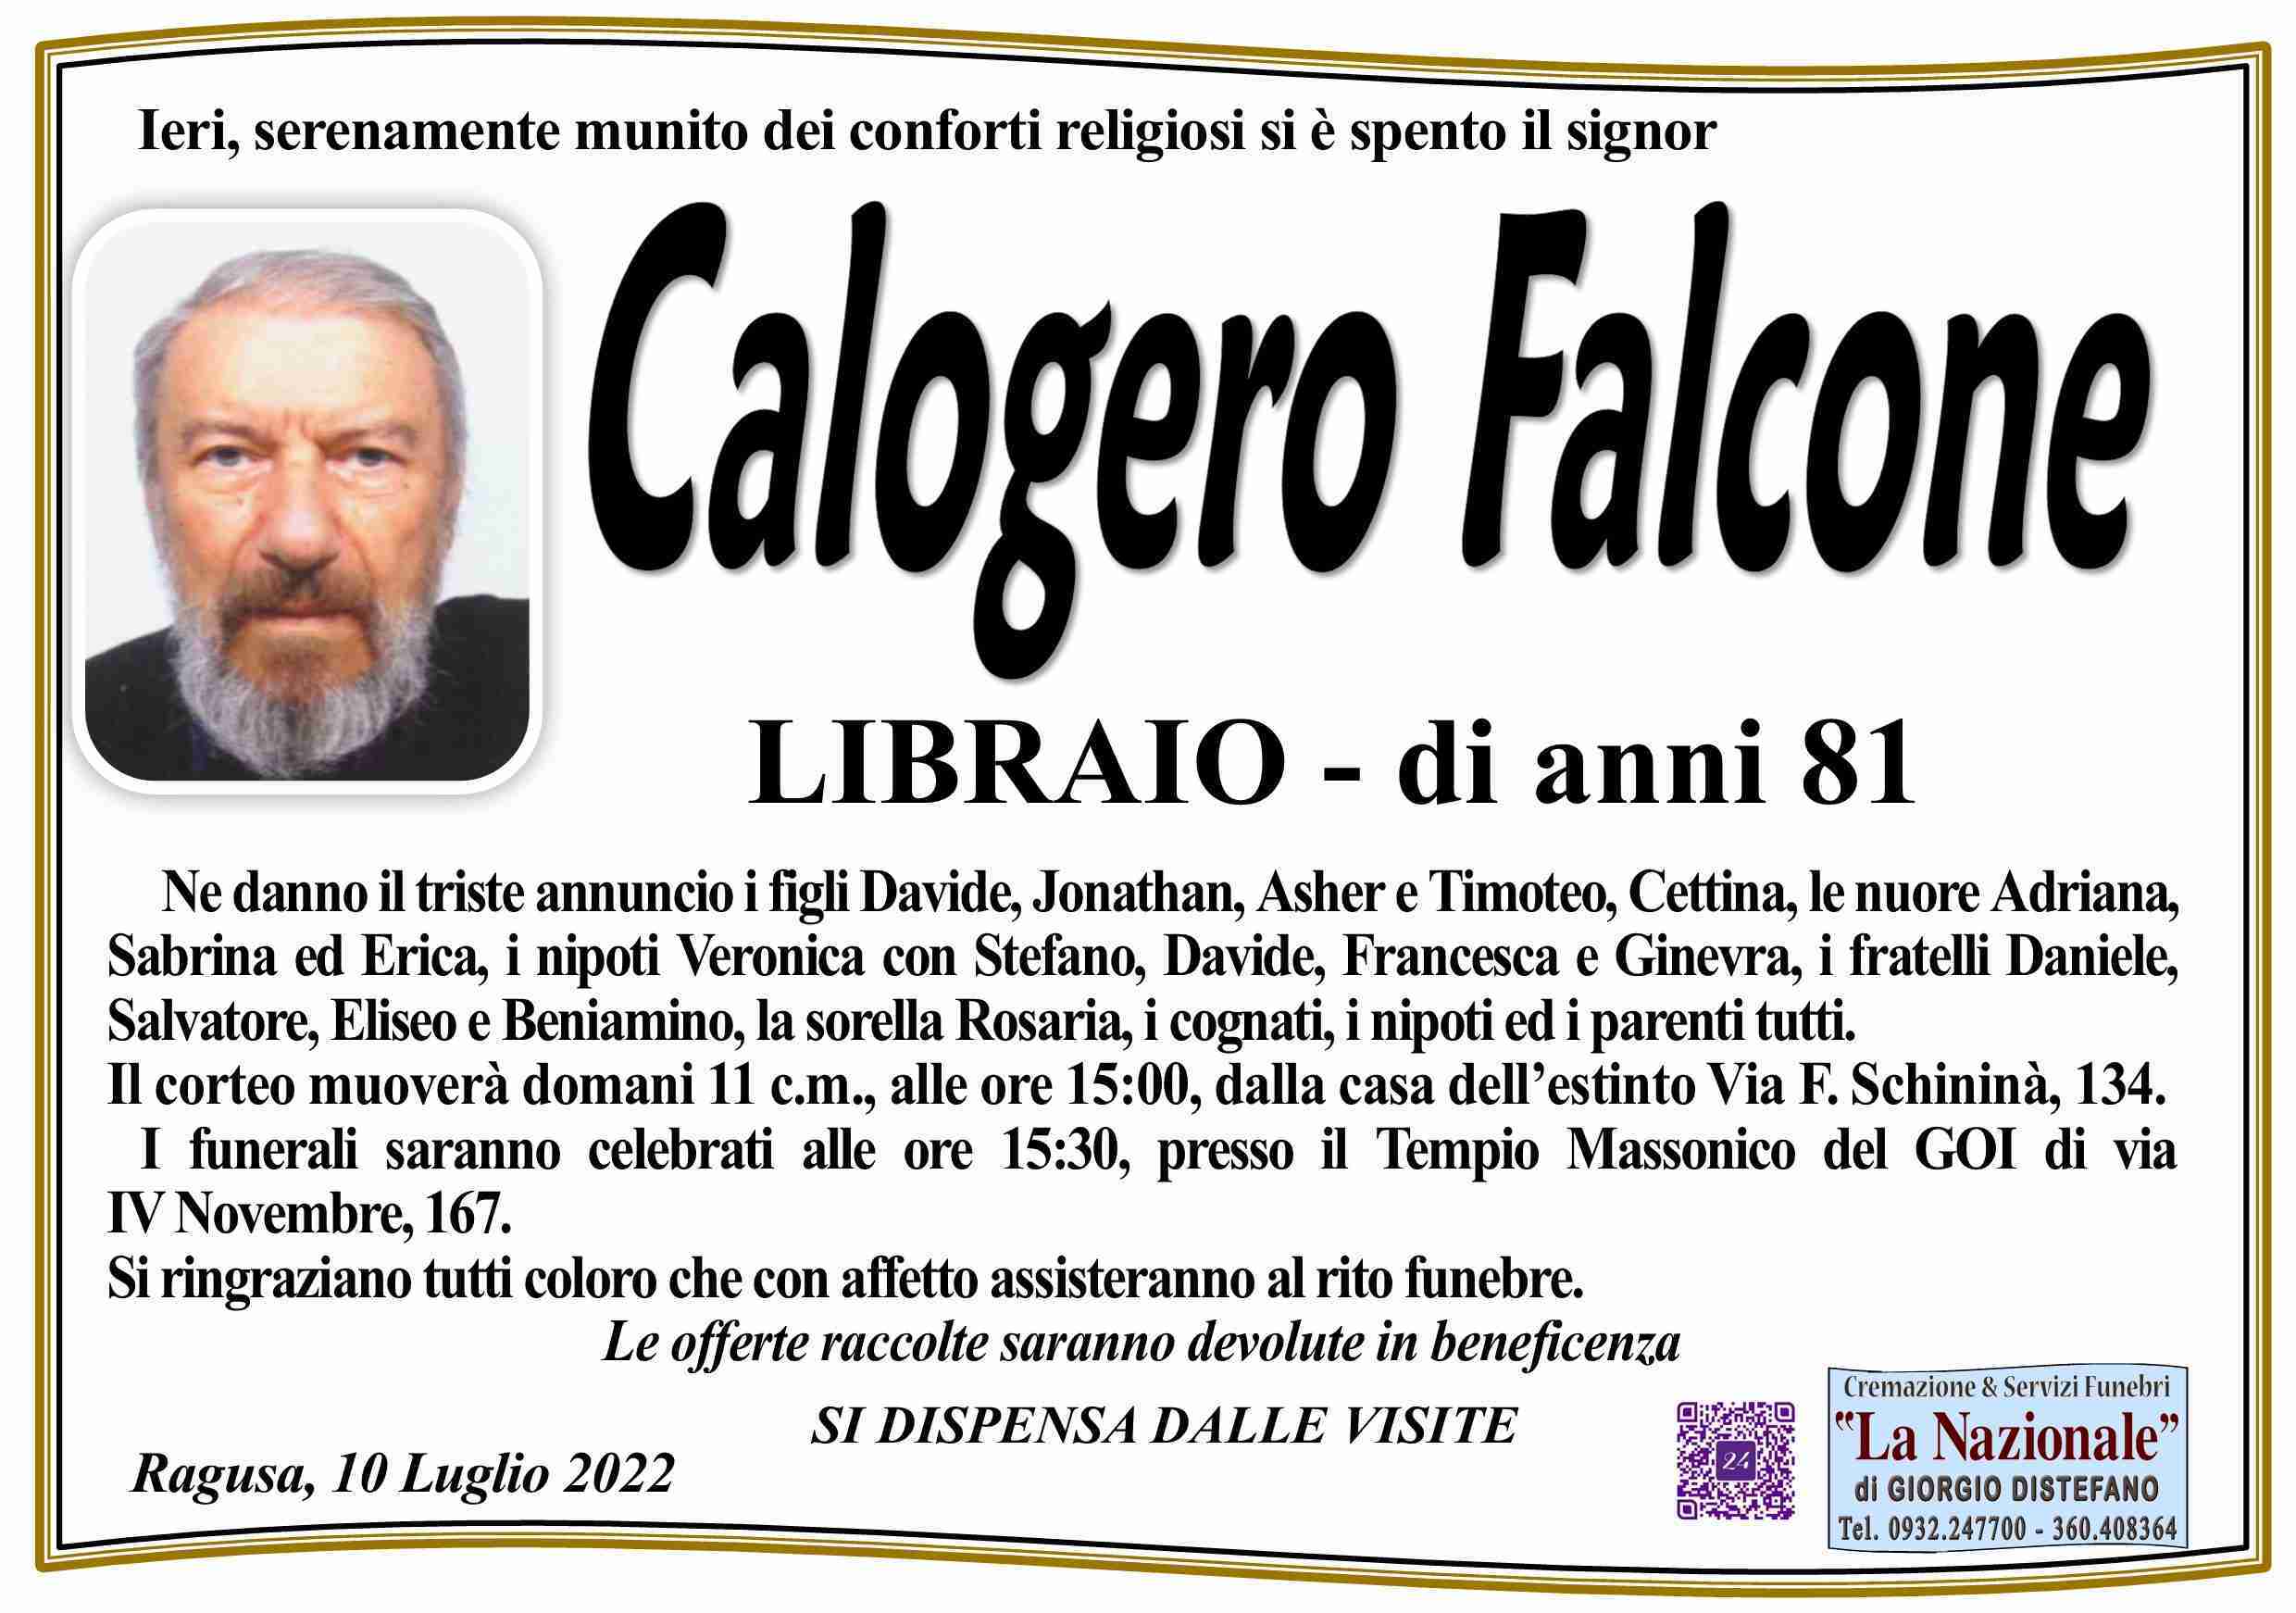 Calogero Falcone